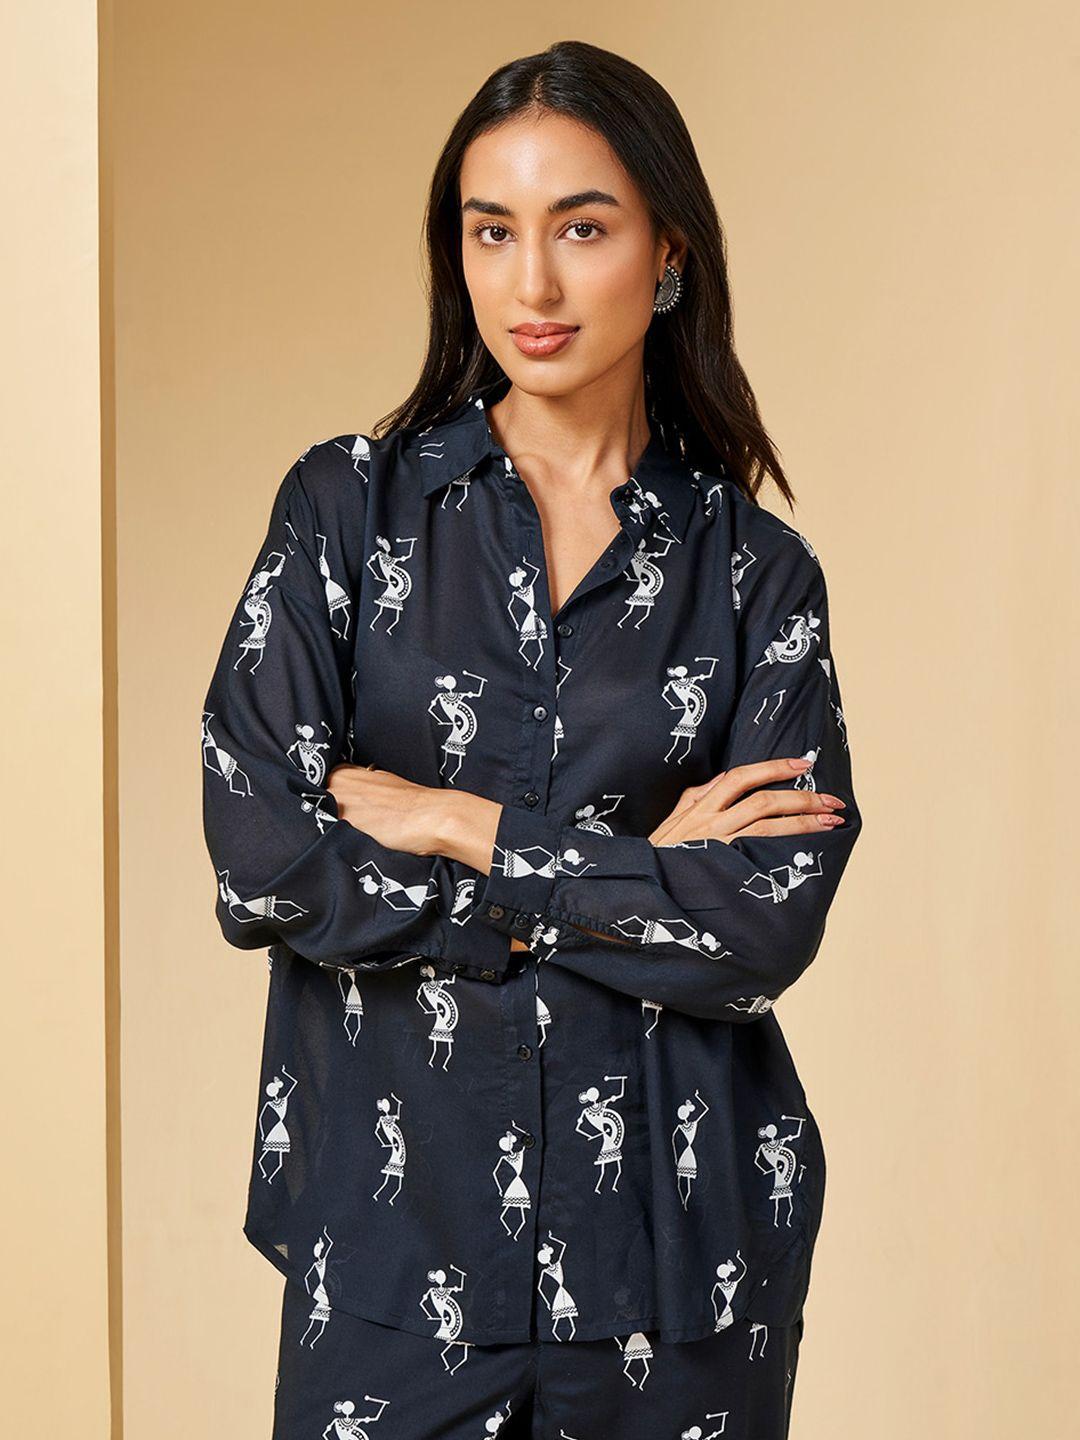 global desi floral print mandarin collar shirt style top